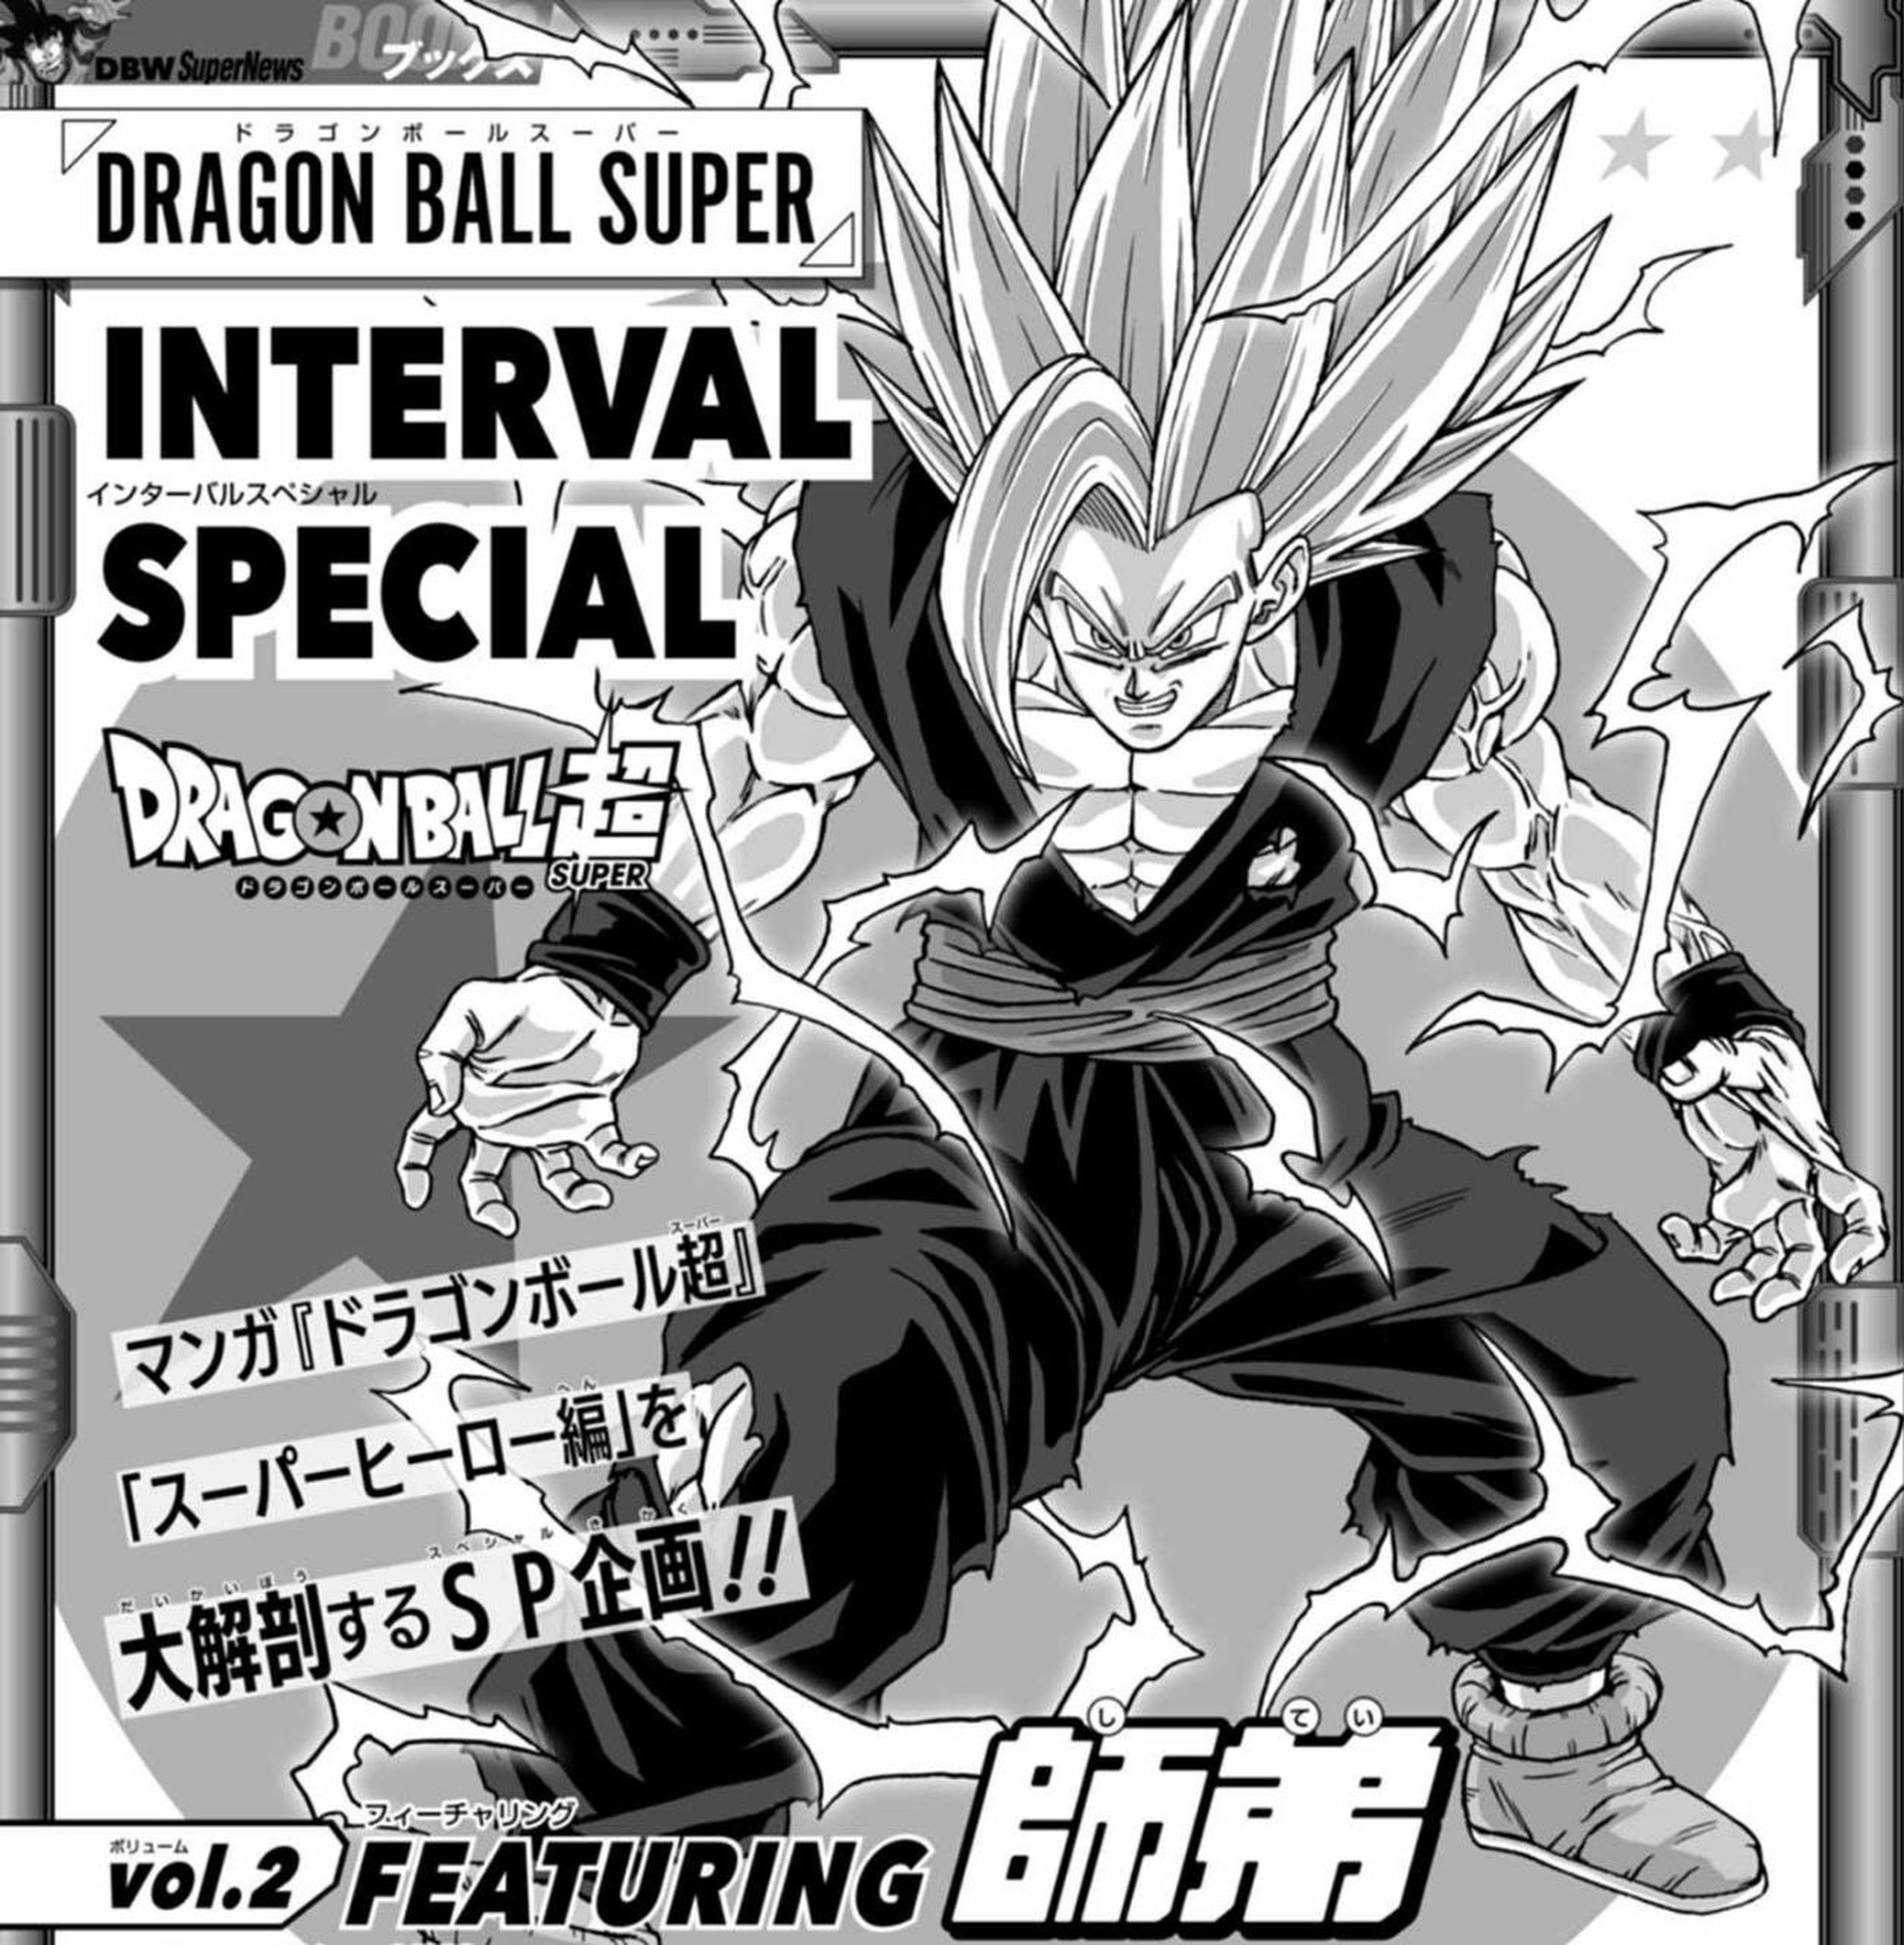 Toyotaro sorprende con una nueva ilustración de Son Gohan Bestia, la transformación más poderosa del hijo de Goku en Dragon Ball Super